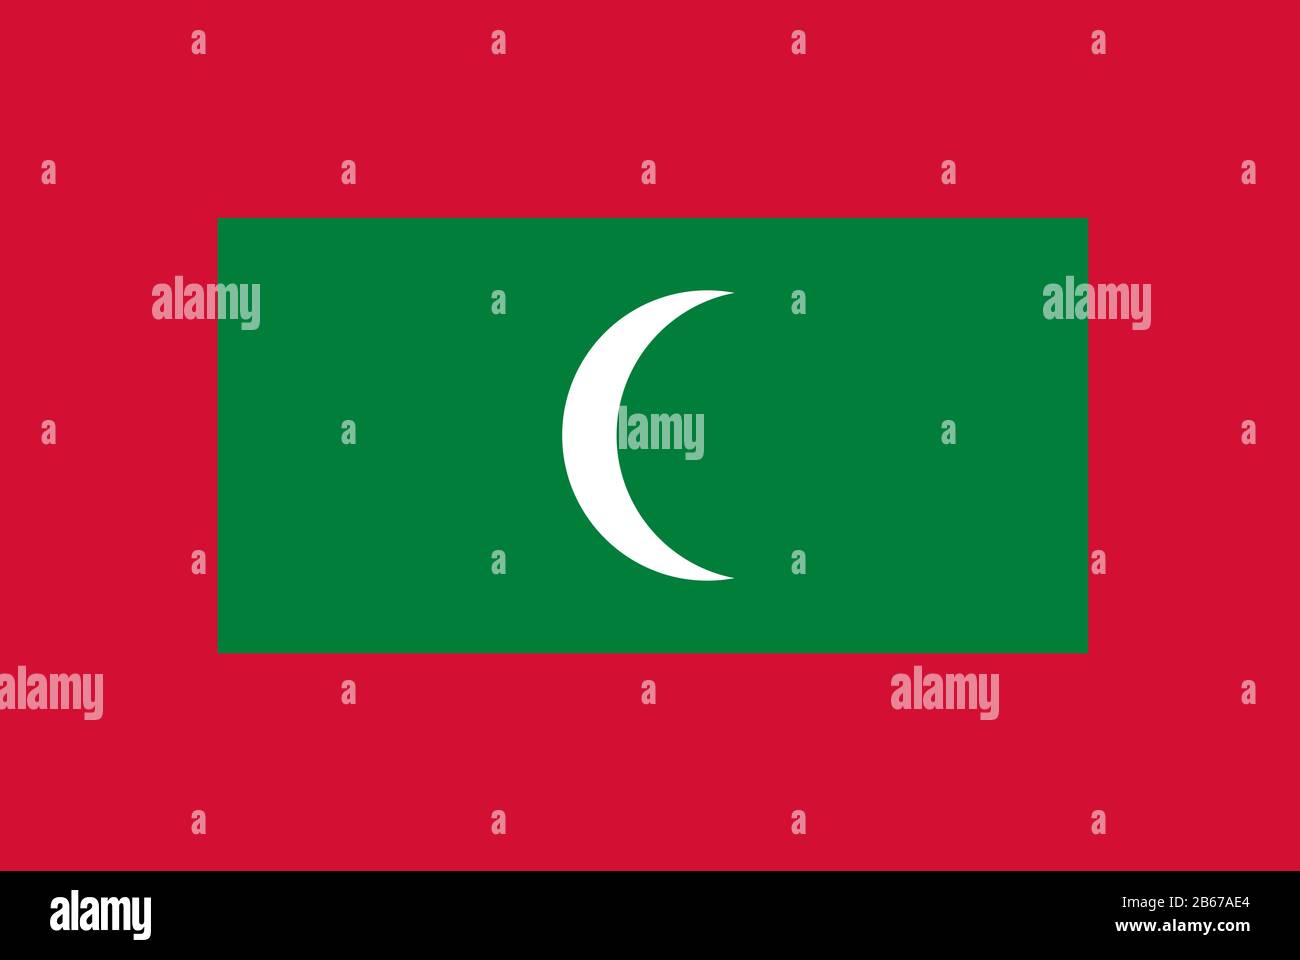 Drapeau des Maldives - Rapport standard des drapeaux maldivien - mode couleur RVB réel Banque D'Images